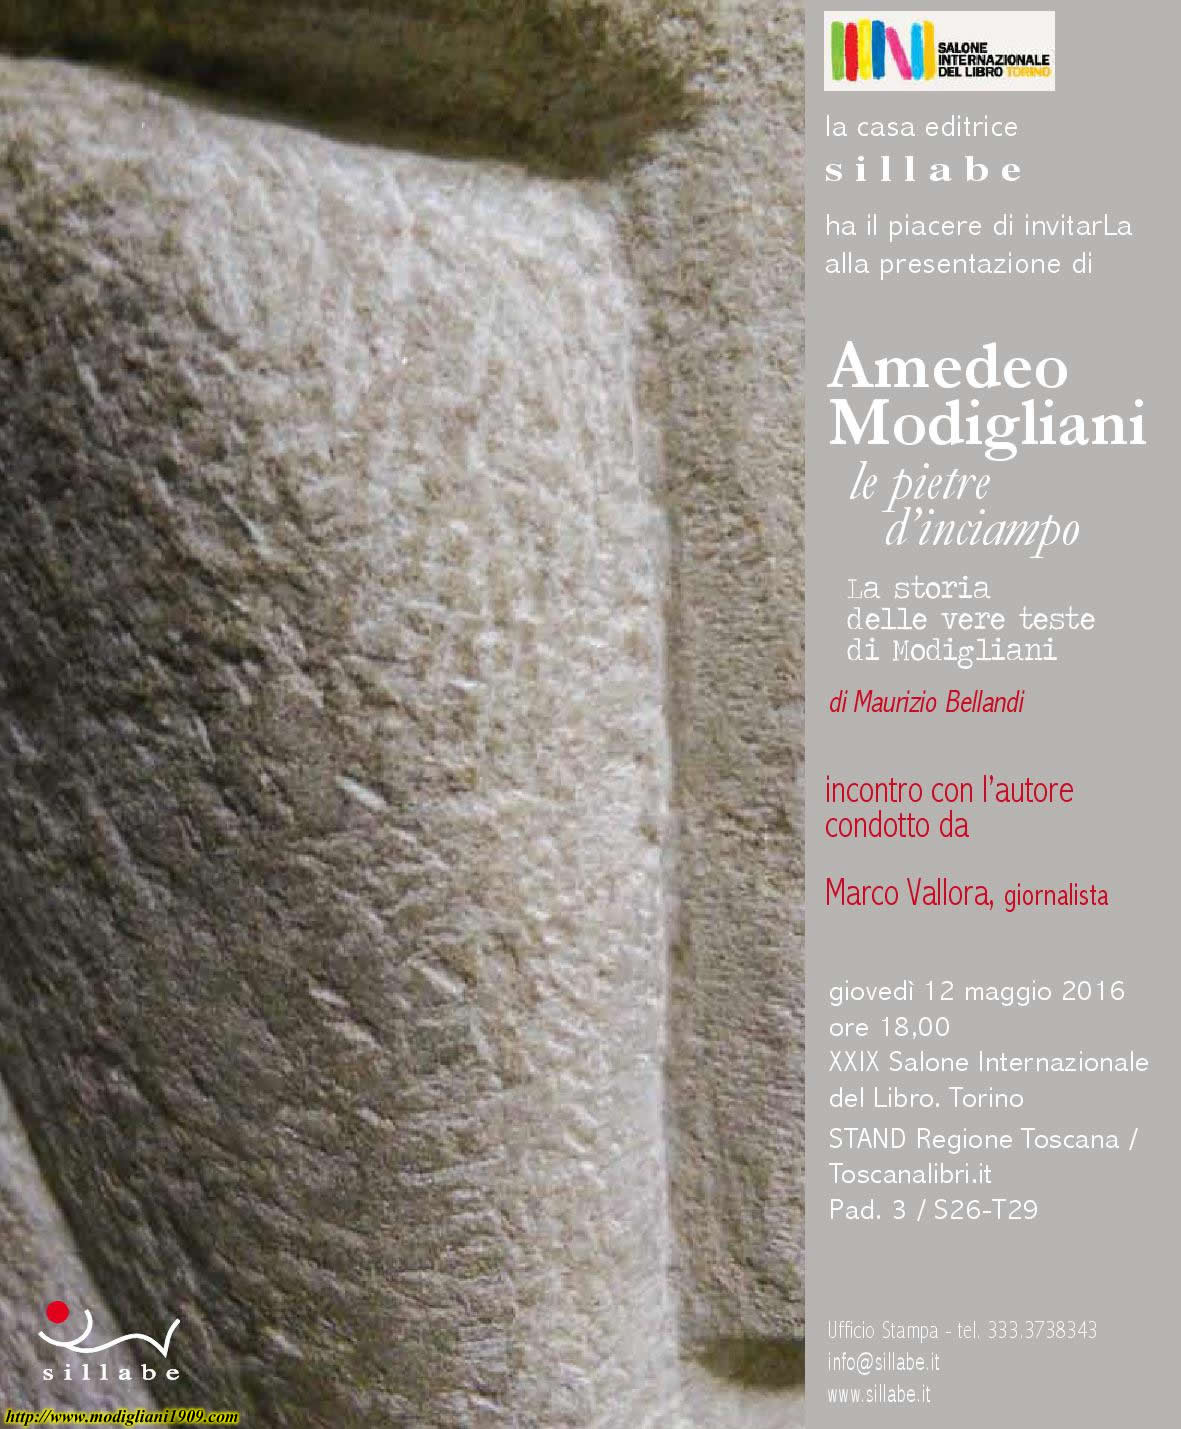 Amedeo Modigliani le pietre d'inciampo al Salone Internazionale del Libro di Torino